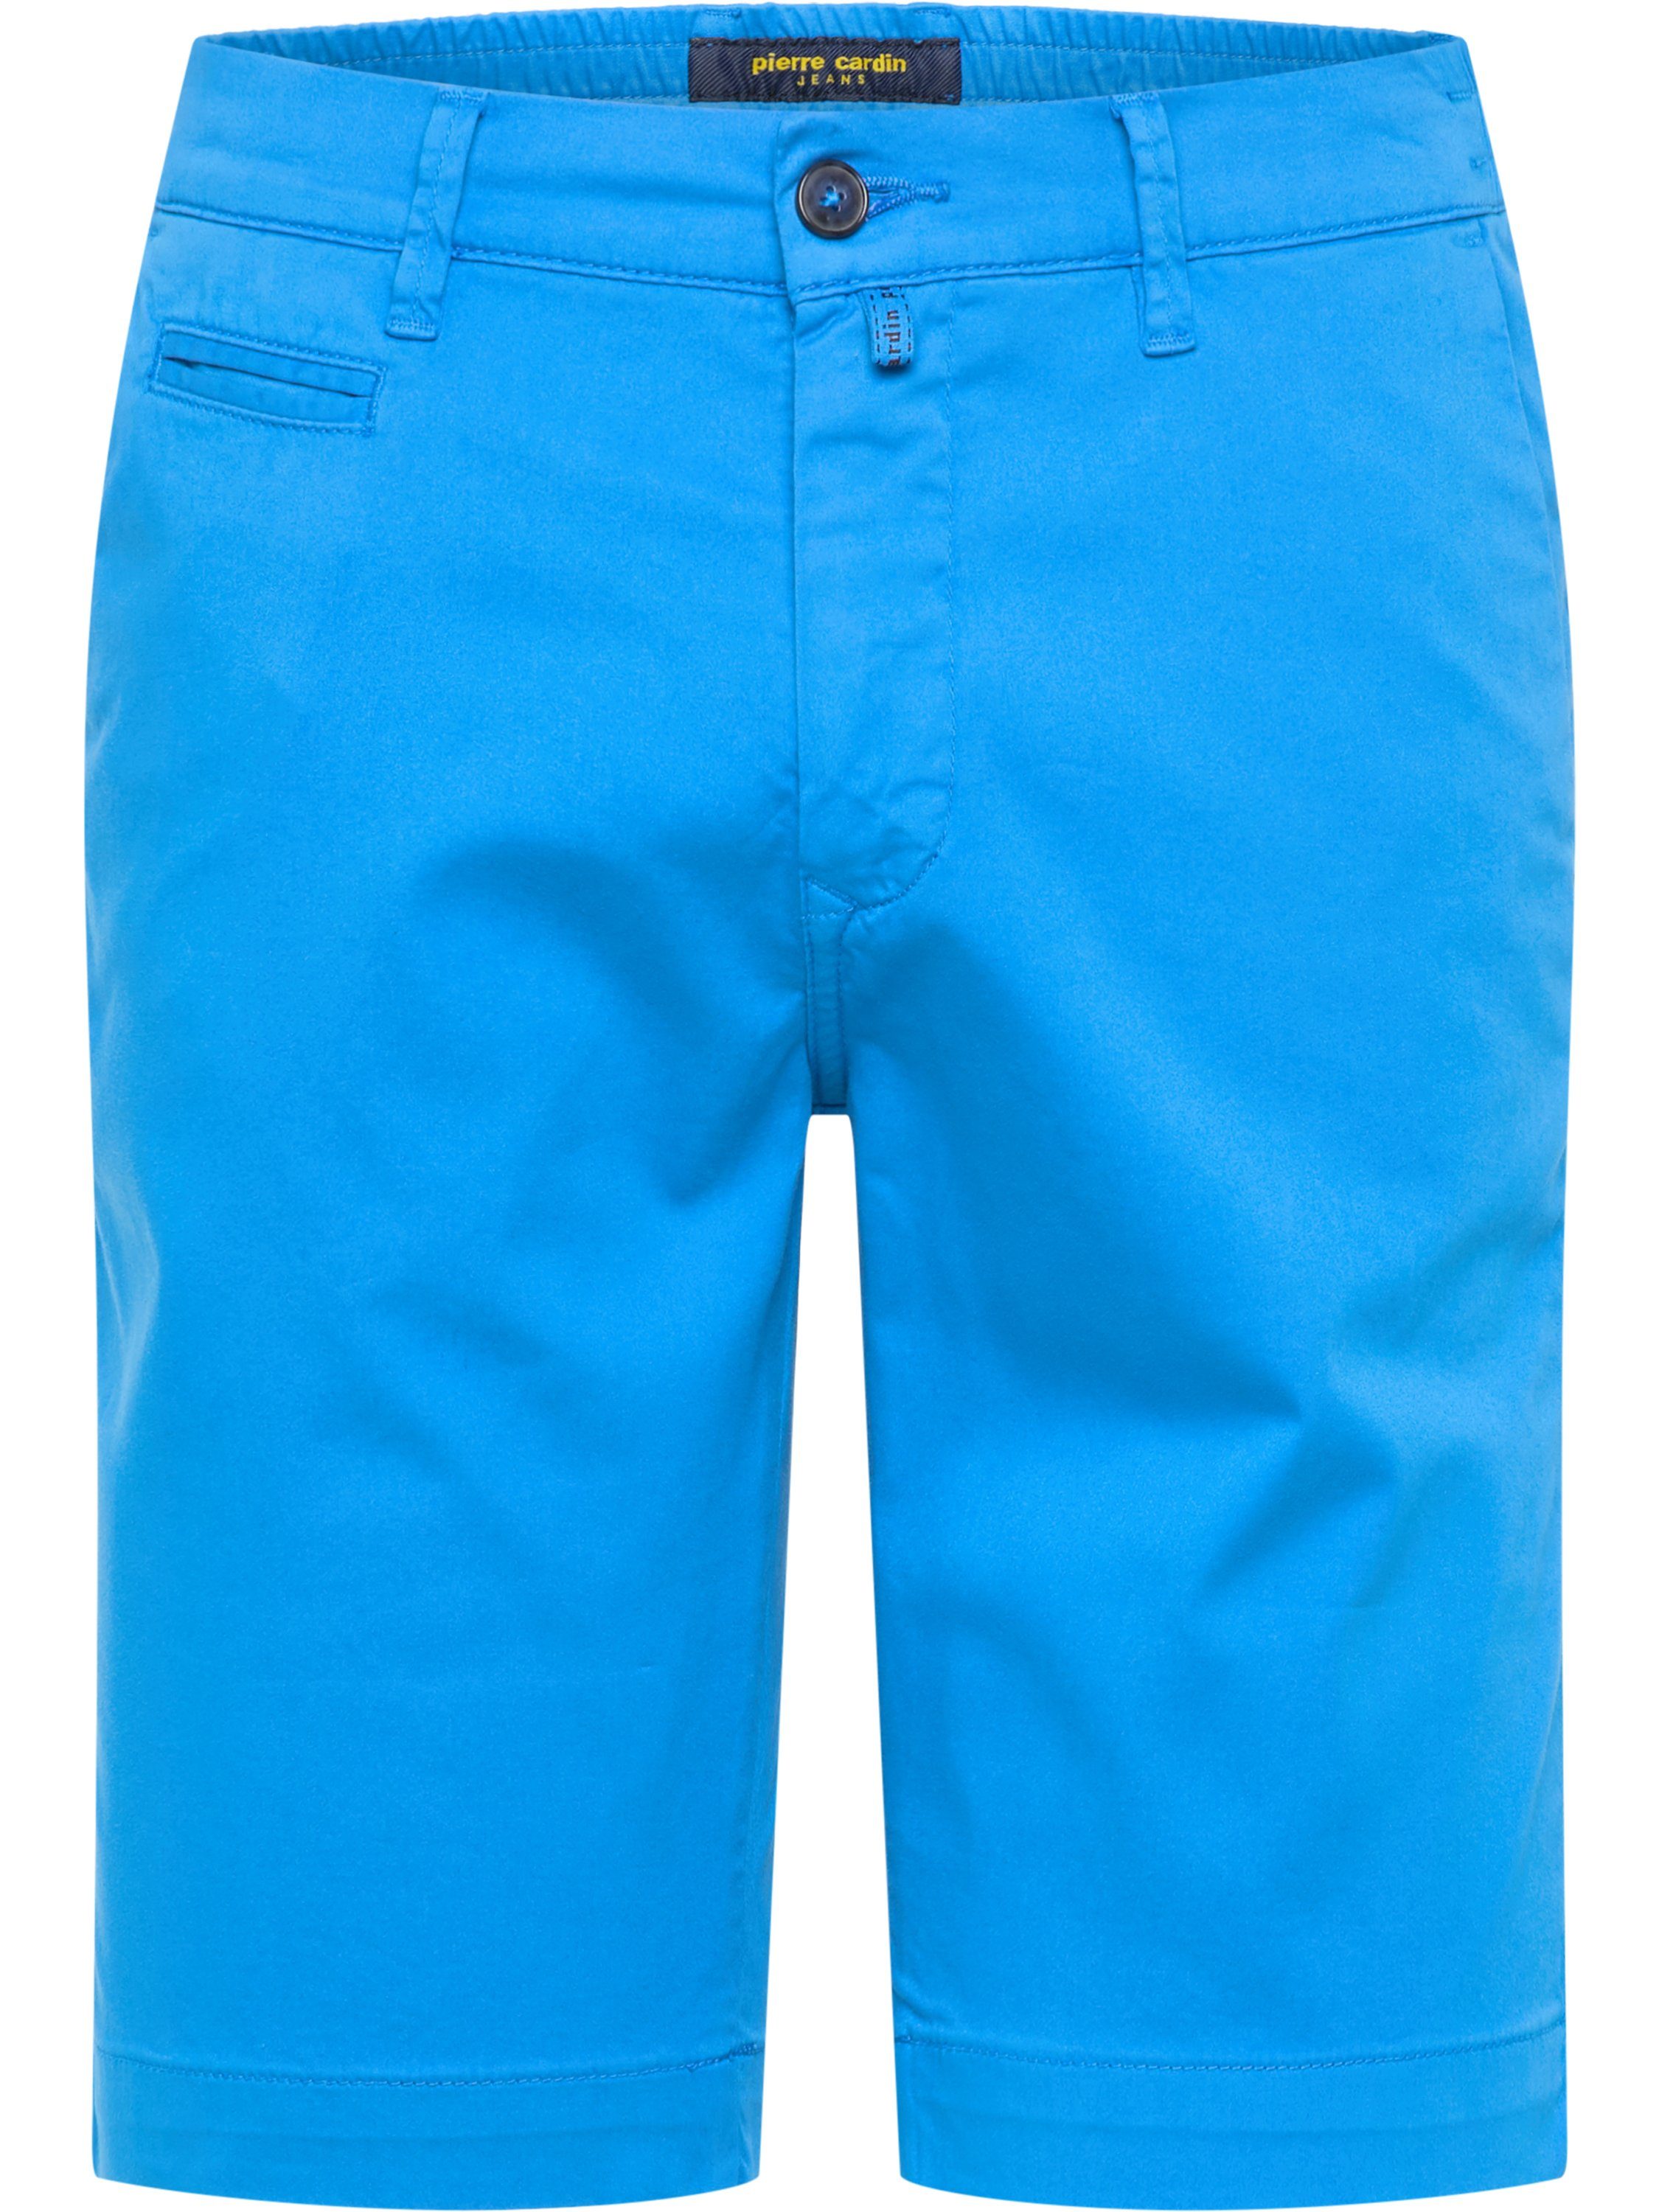 Pierre Cardin 5-Pocket-Jeans 3477 LYON bright 2080.64 CARDIN PIERRE blue BERMUDA AIRTOUCH